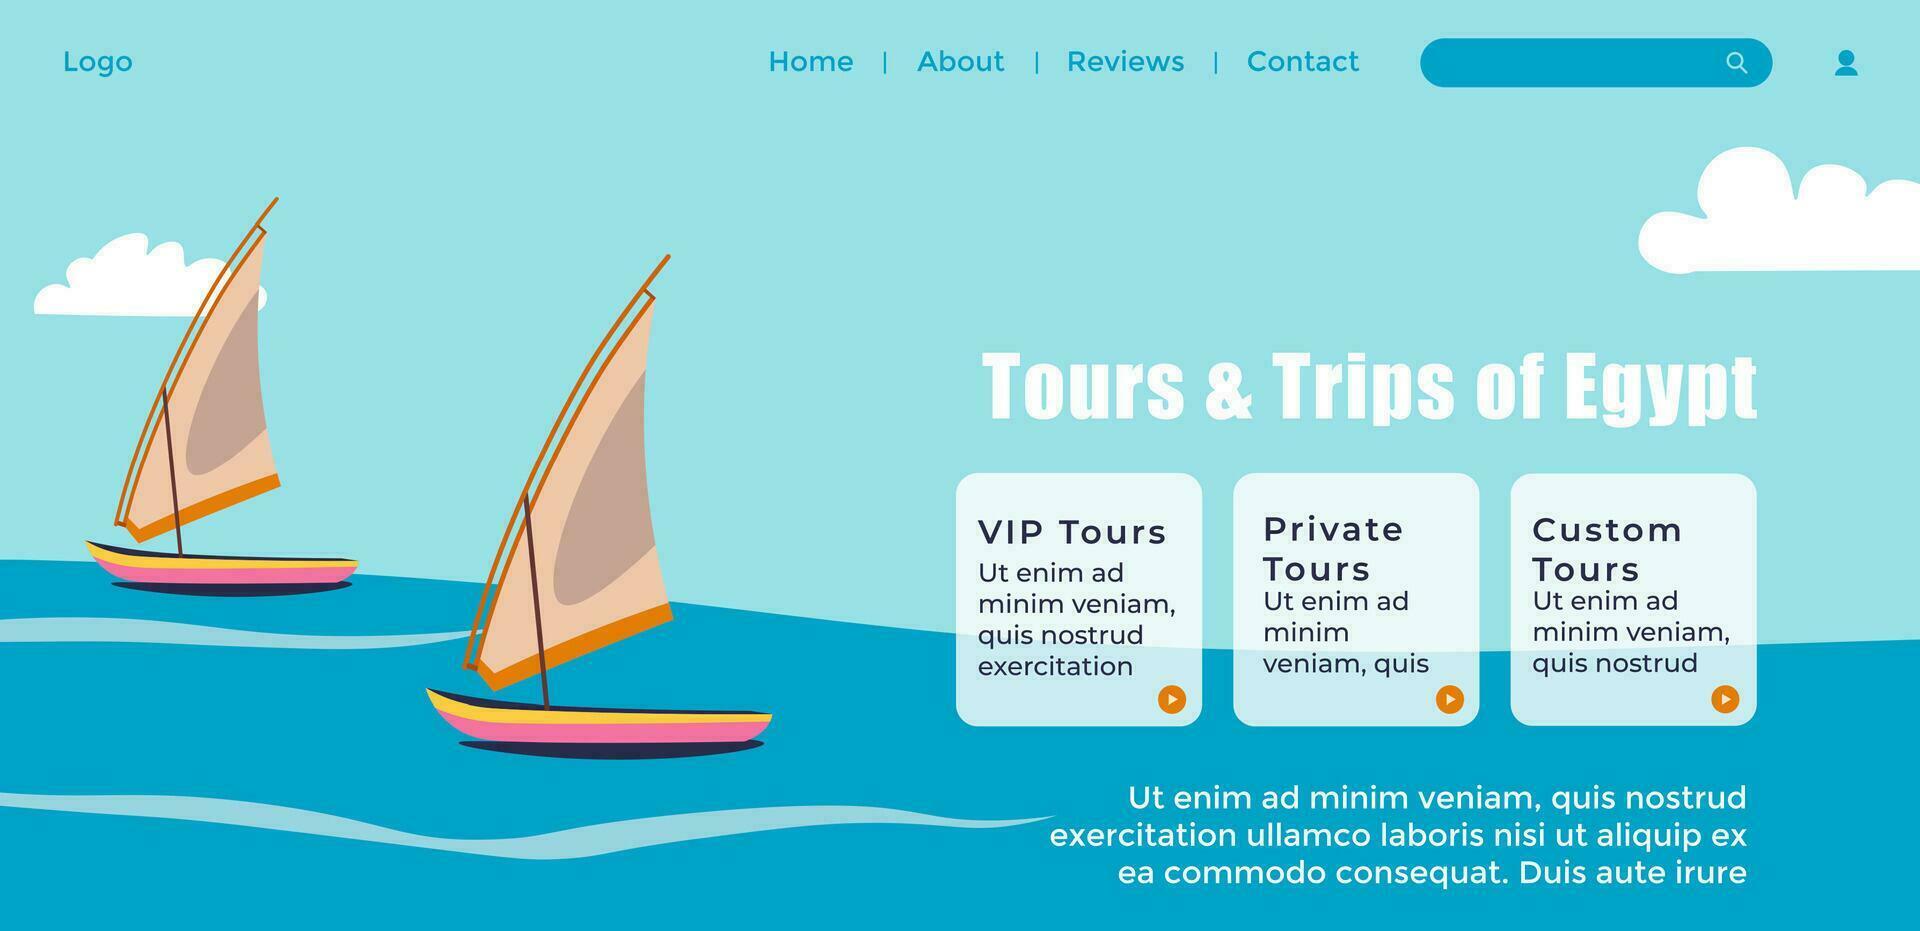 Individuell und Privat vip Touren zum Ägypten Ausflug vektor